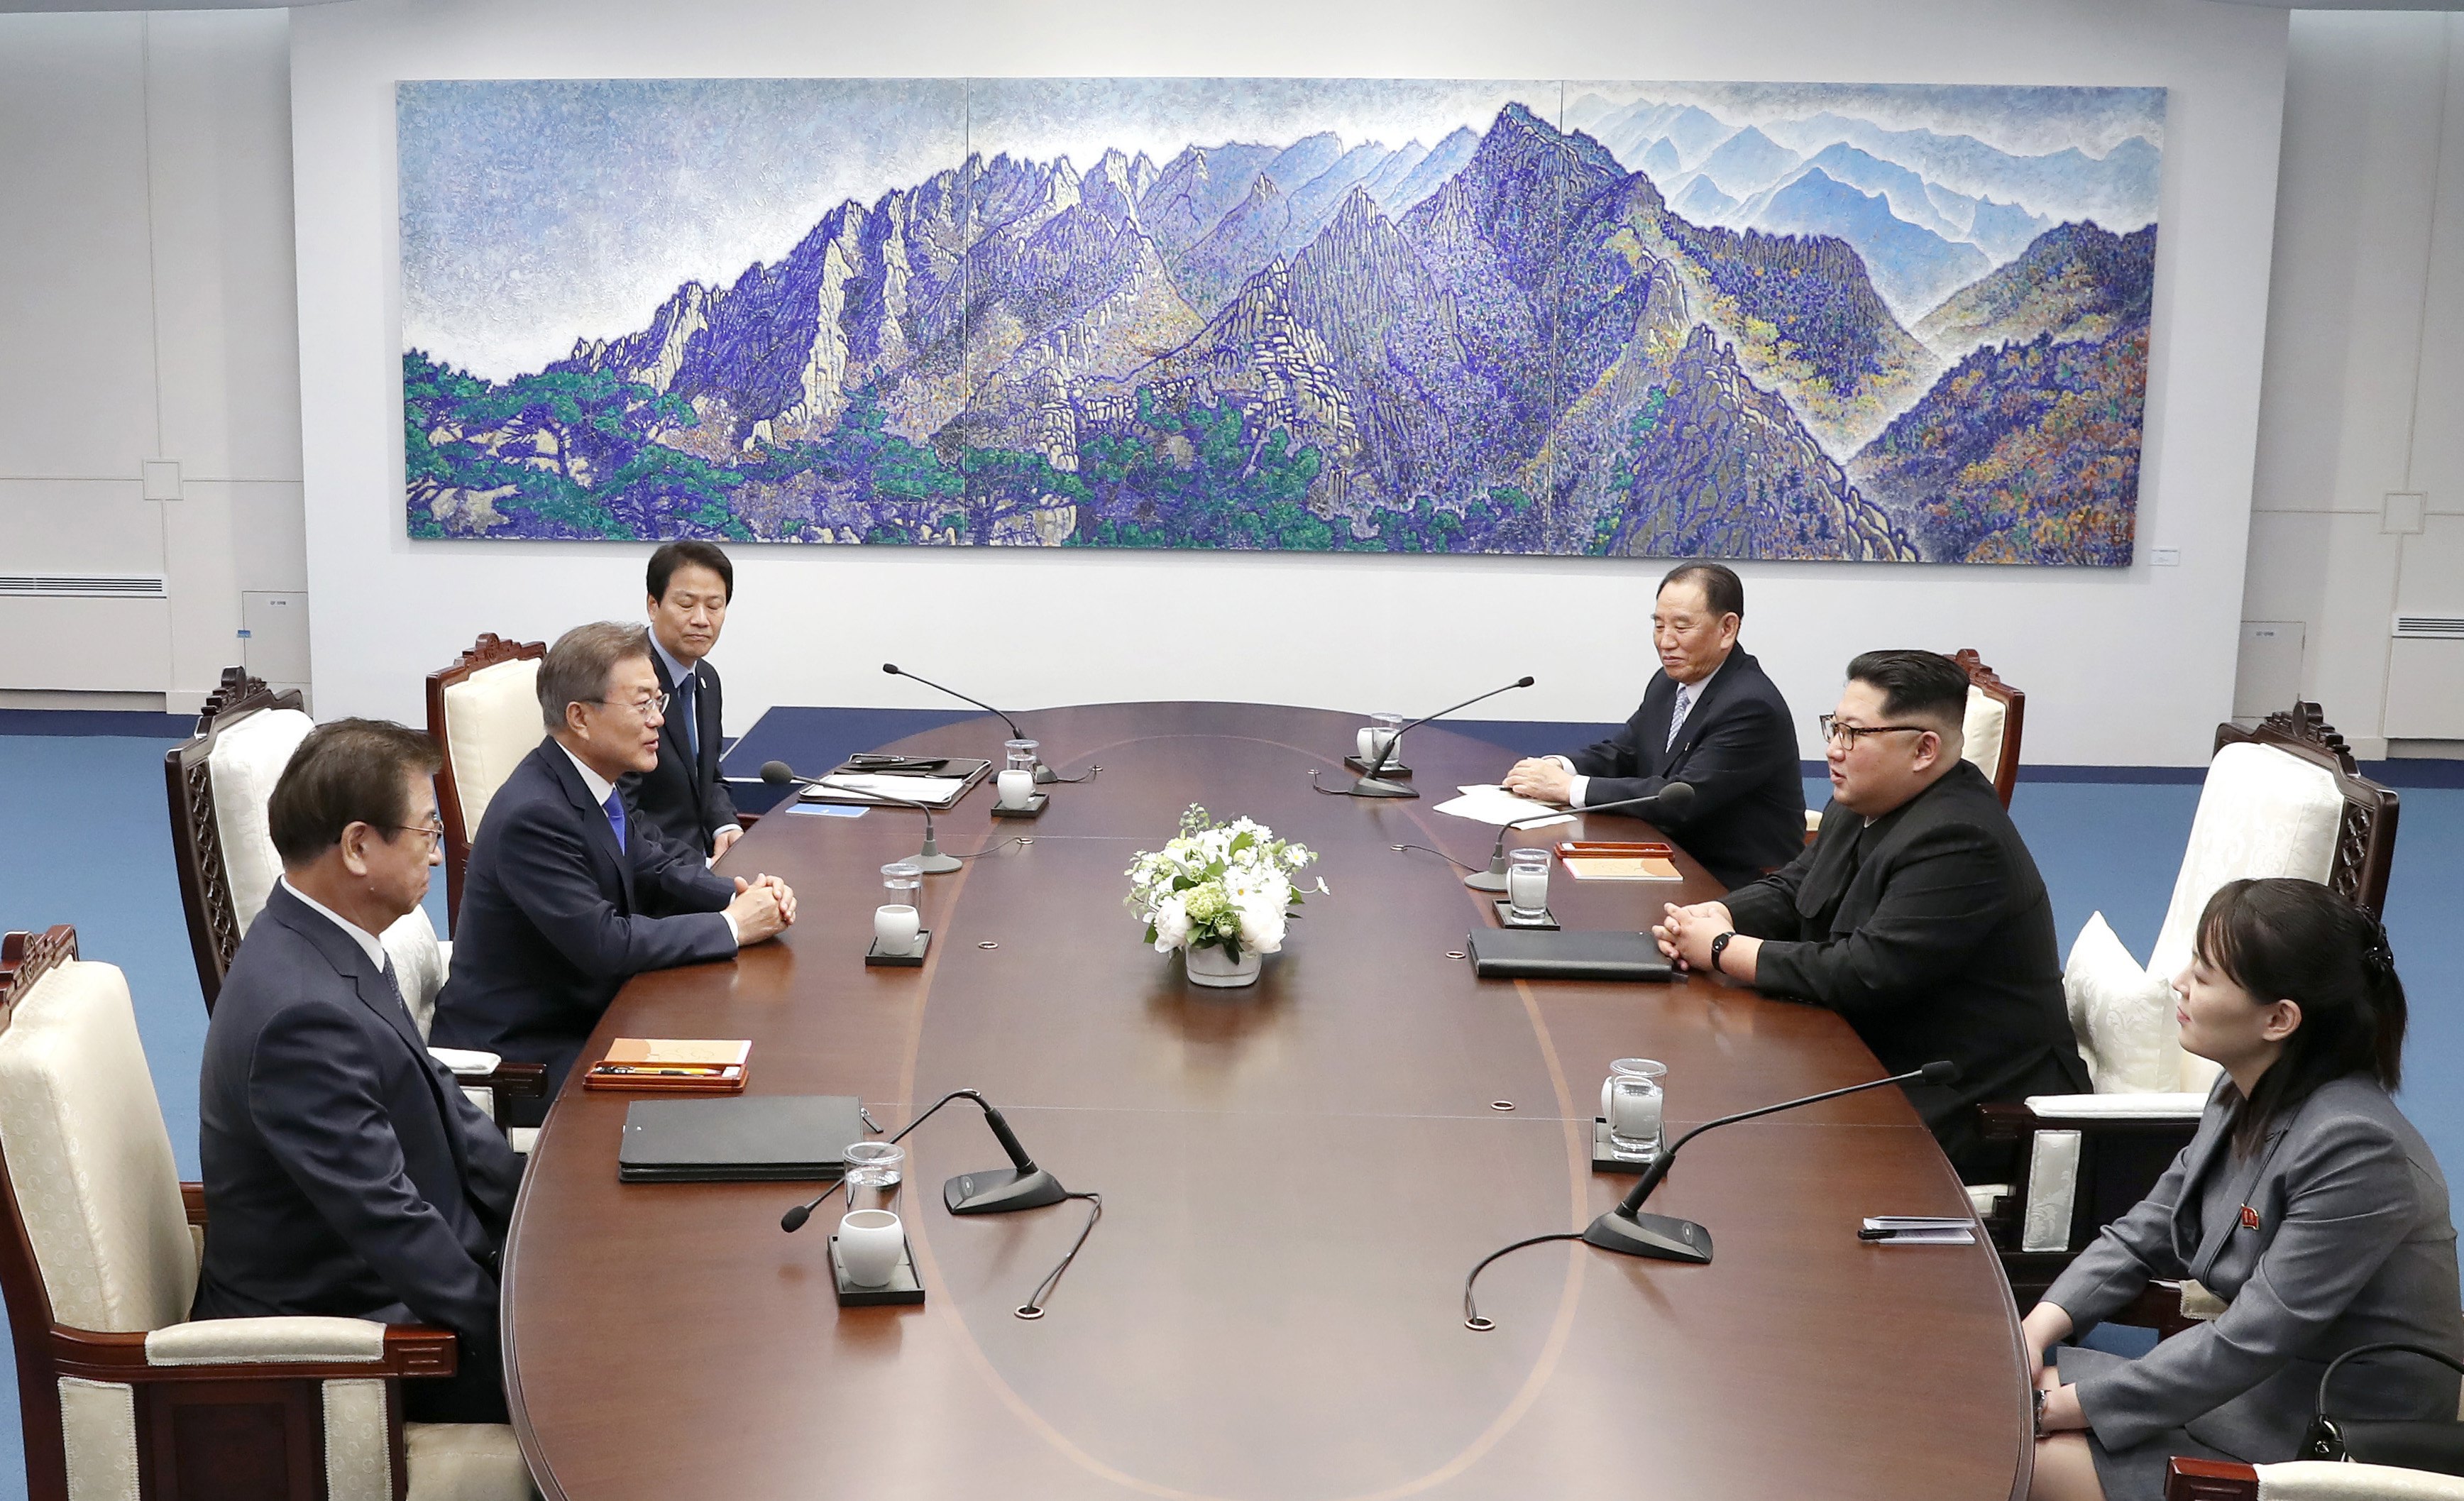 Ким Чен-ун стана първият лидер на севернокорейската държава, който преминава от южната страна на границата от 1953 г. Двамата с южнокорейския му колега демонстративно си стиснаха ръцете на граничната линия.